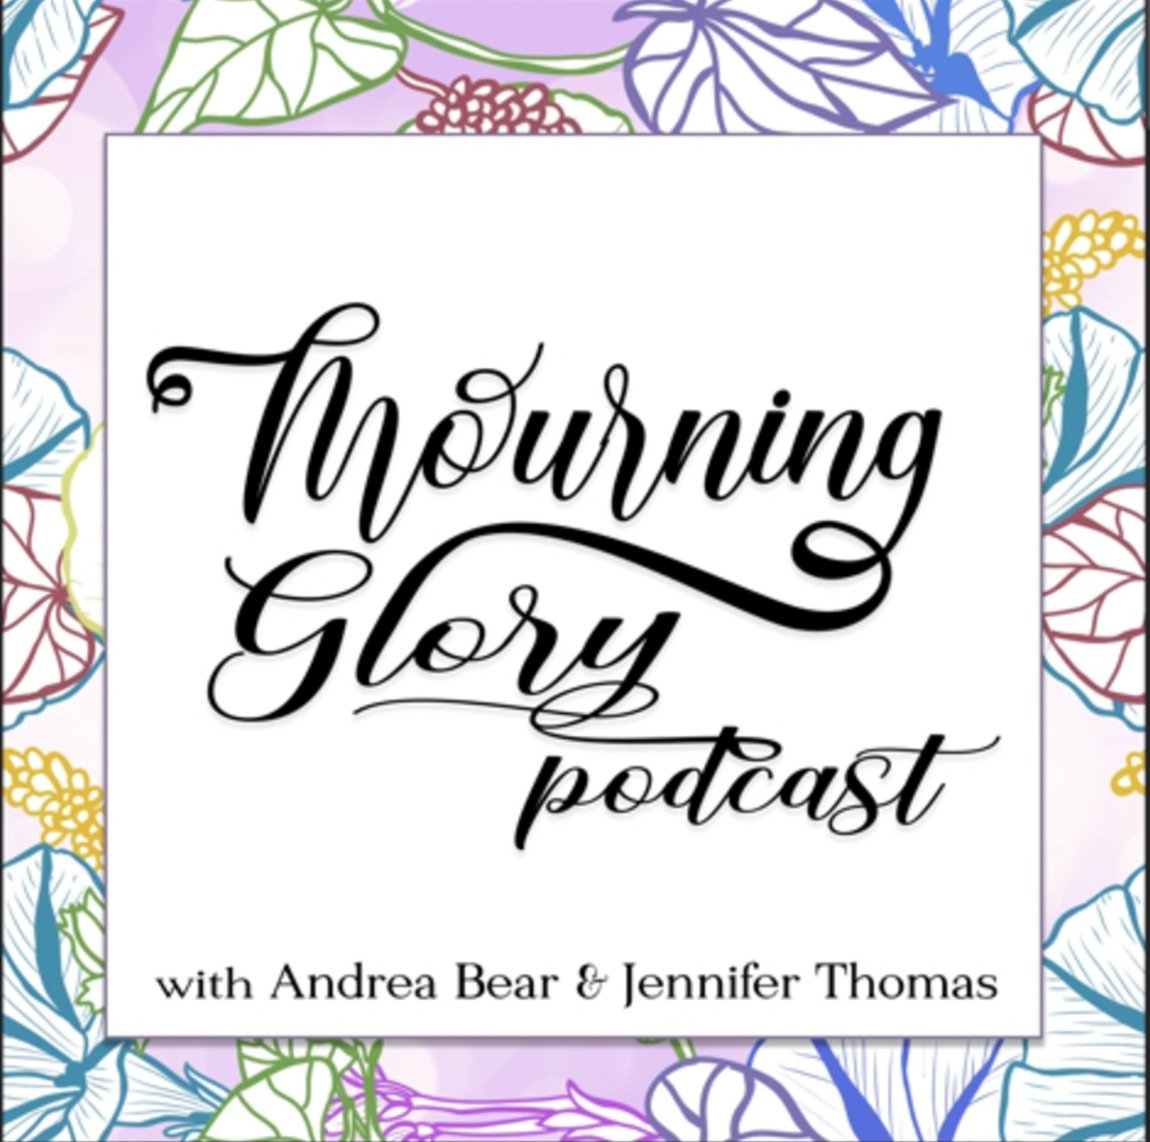 Mourning Glory Podcast